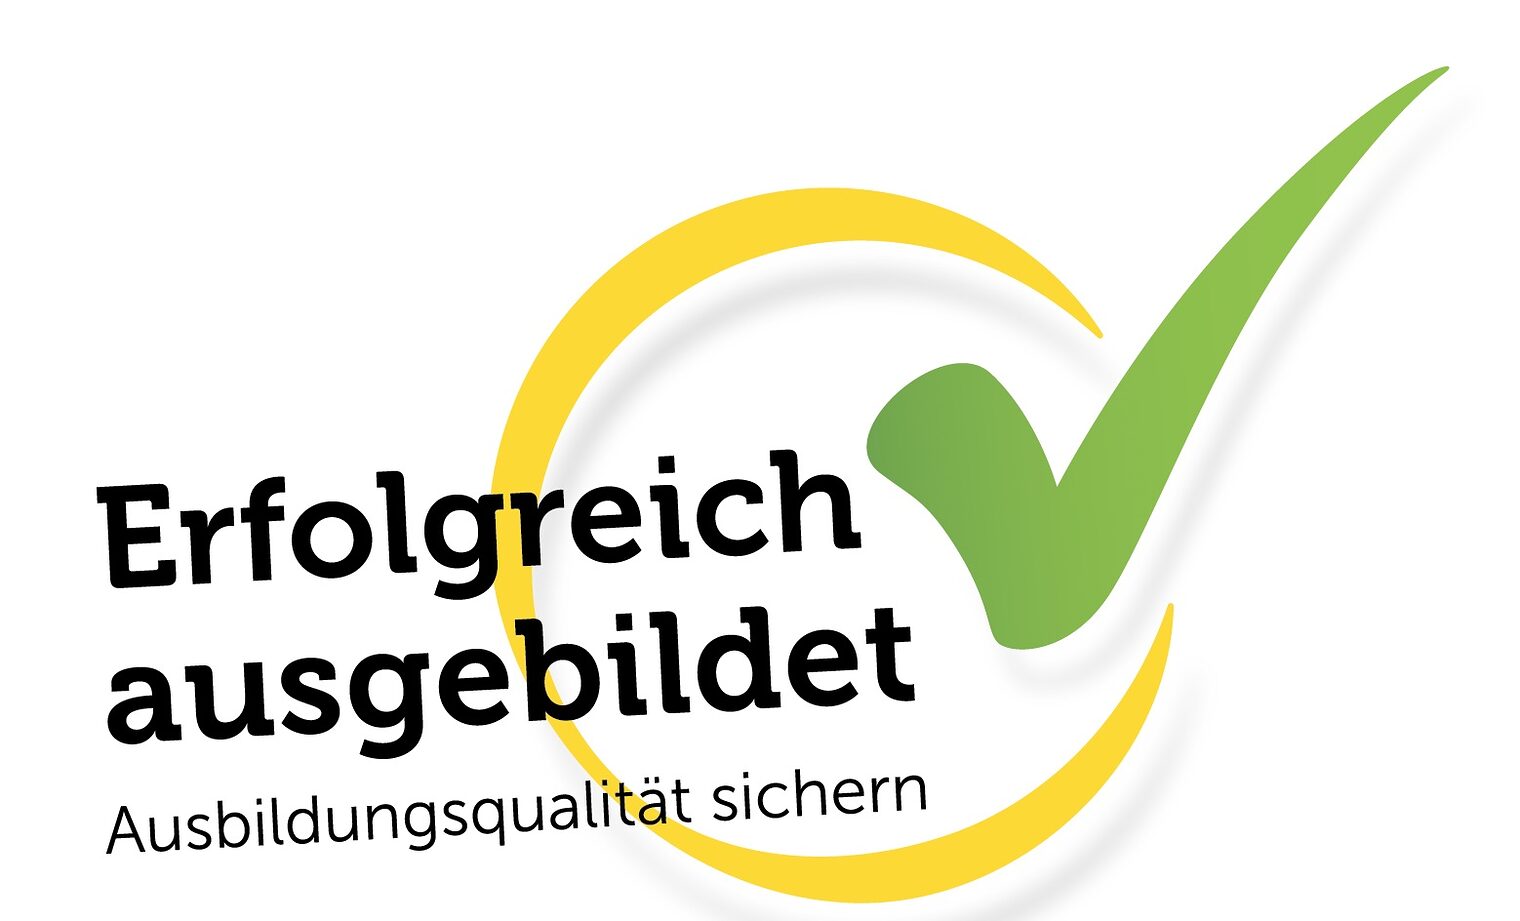 Logo von "Erfolgreich ausgebildet" mit gelbem Kreis und grünem Haken